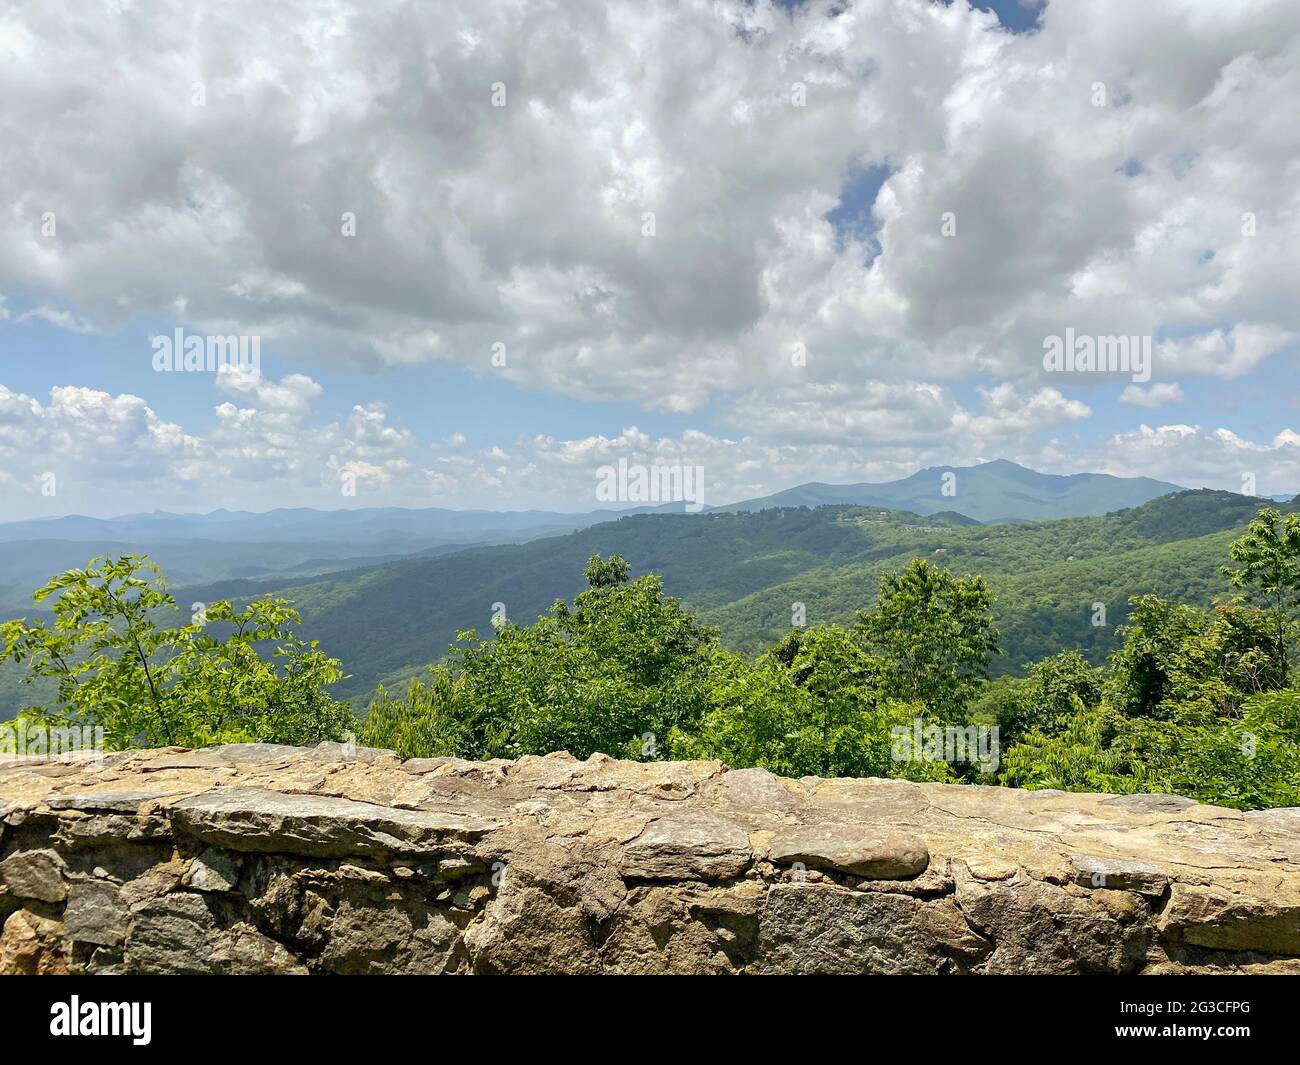 Blick auf Berge, Bäume und Wolken, von einem künstlichen Steinvorsprung aus gesehen Stockfoto